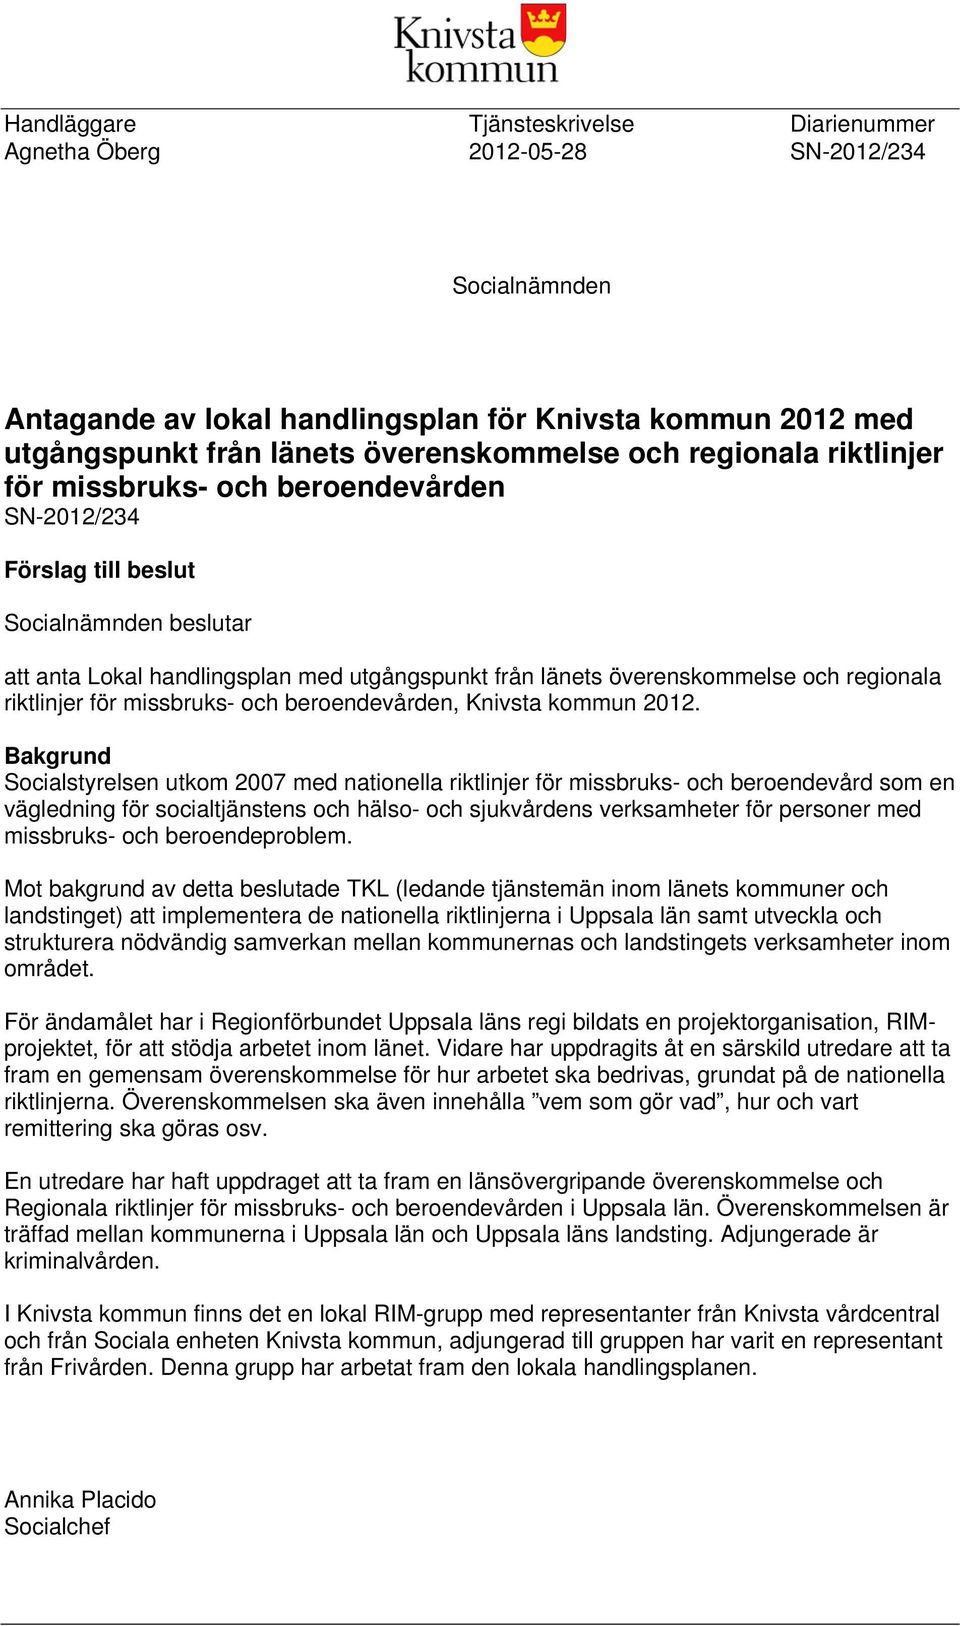 riktlinjer för missbruks- och beroendevården, Knivsta kommun 2012.